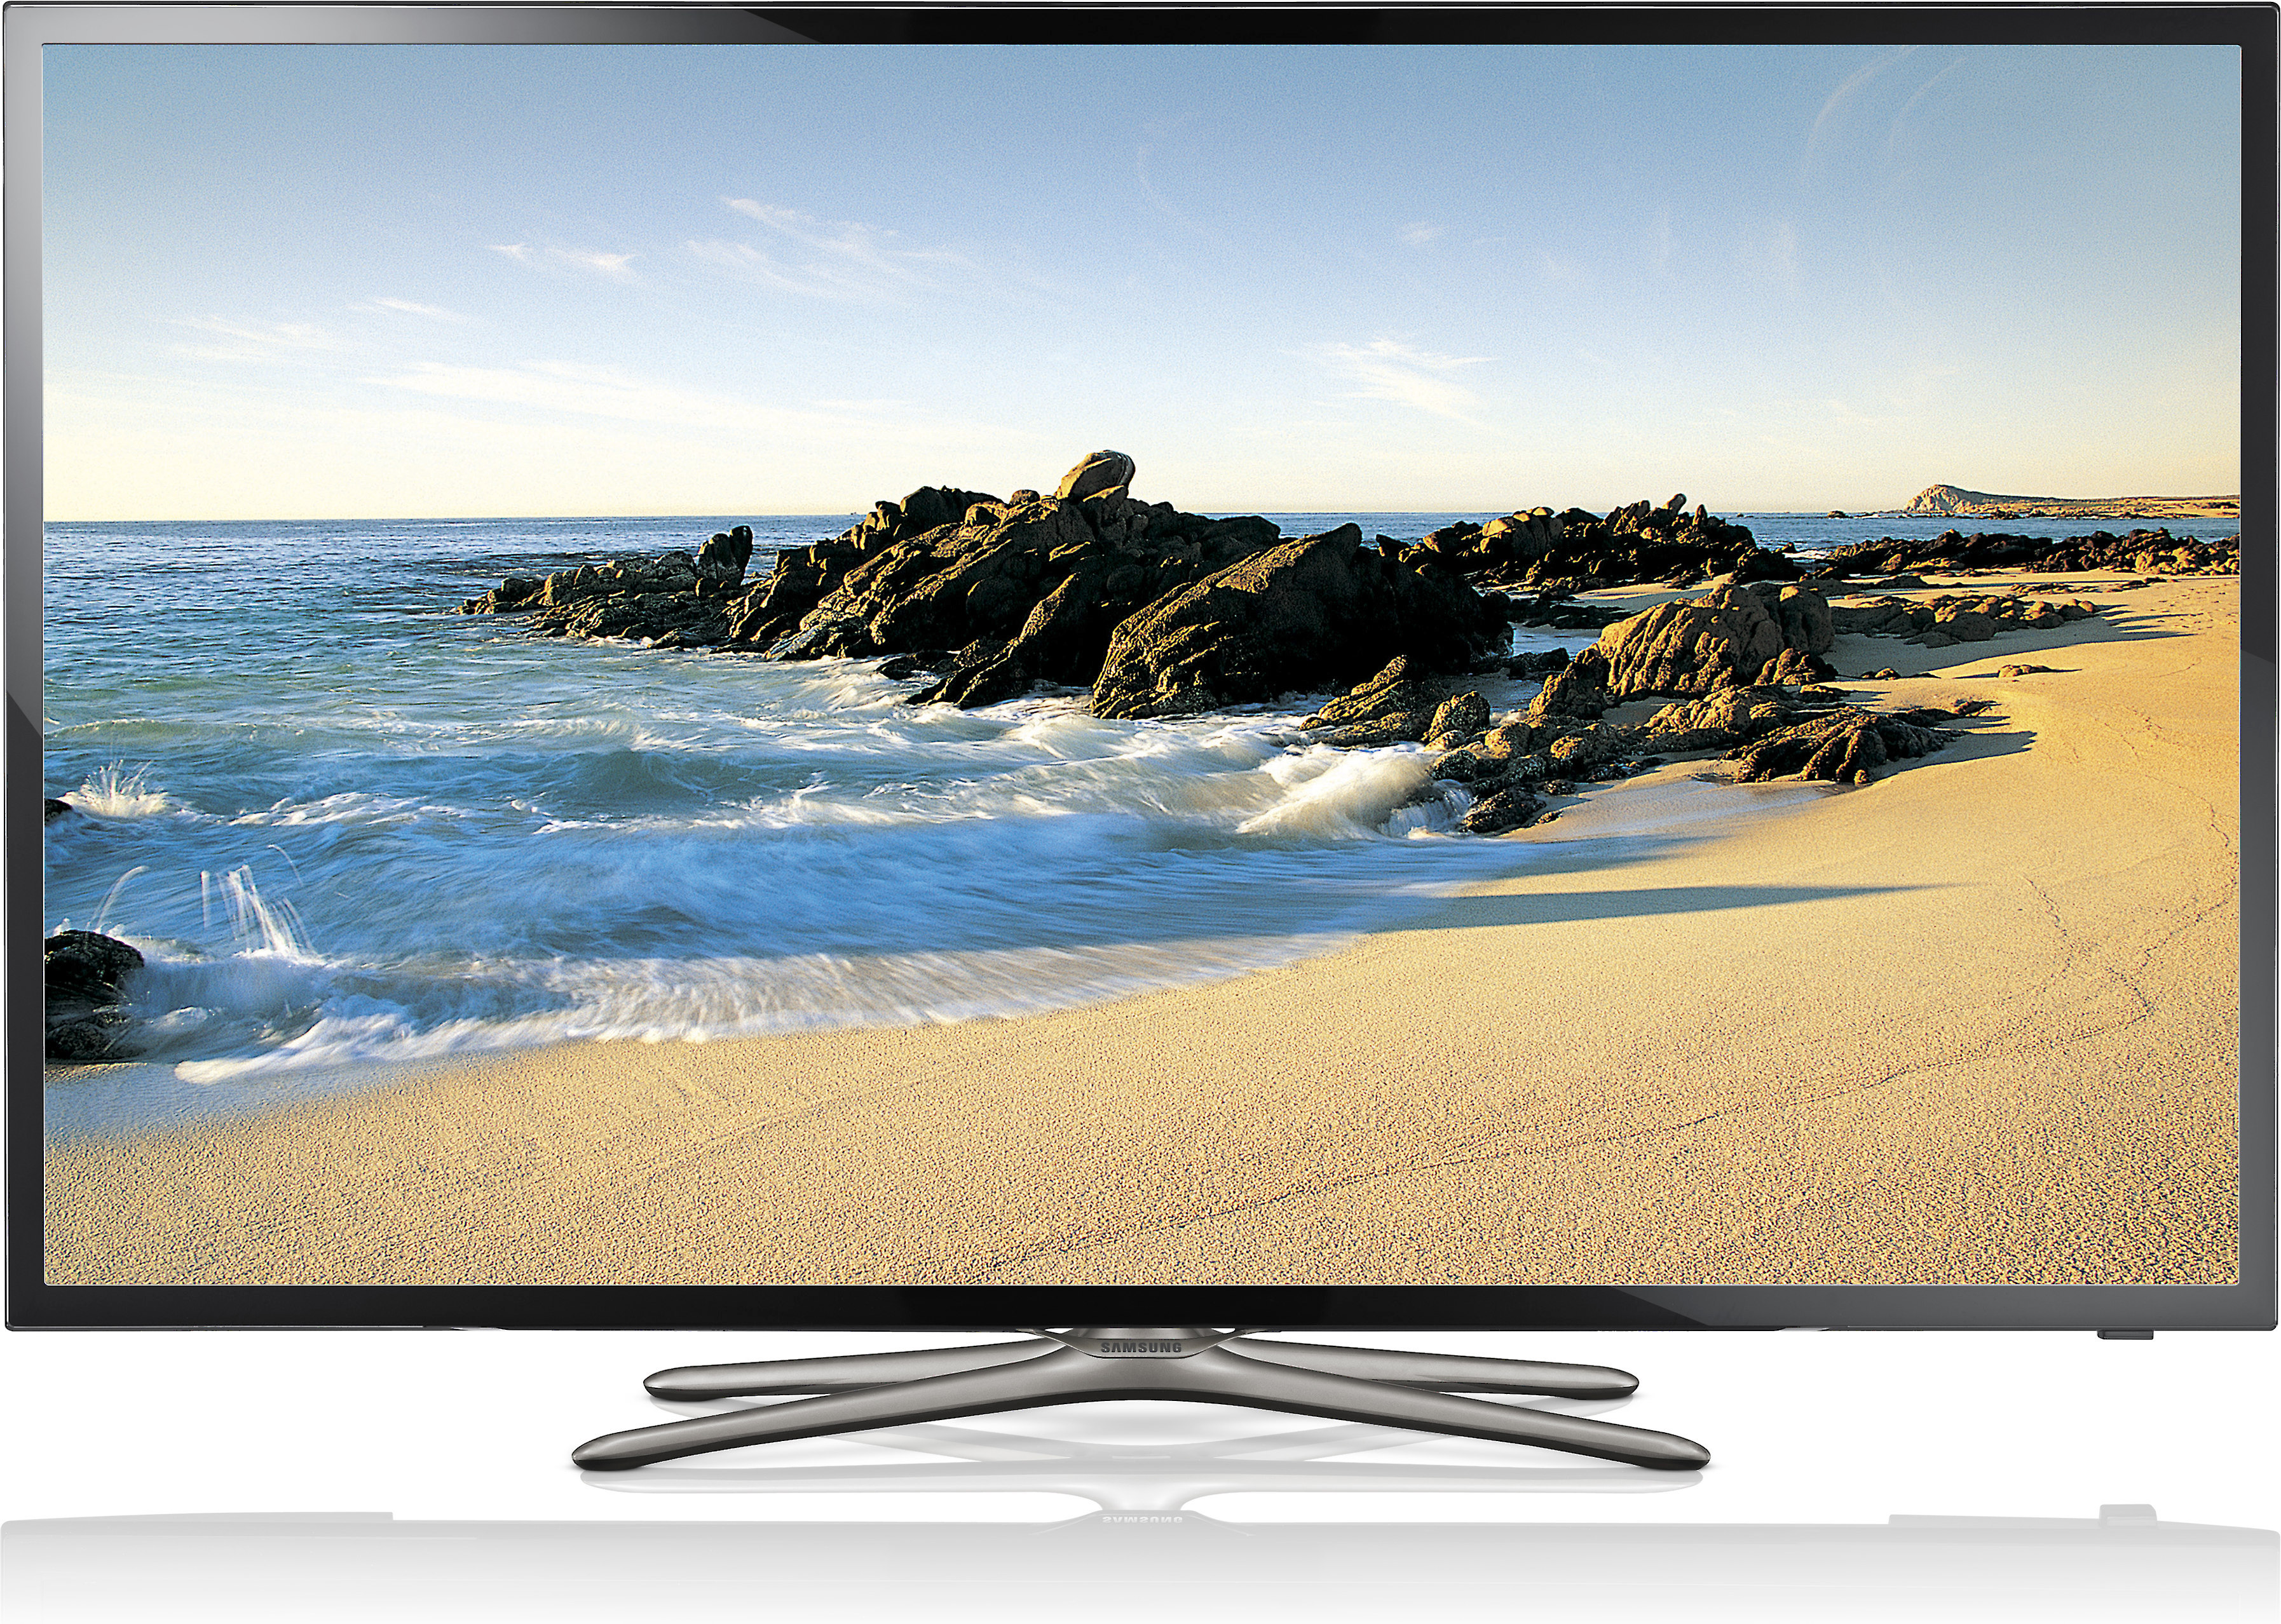 Samsung tv 32 дюймов. Телевизор самсунг смарт ТВ 32. Самсунг смарт ТВ 32 дюйма. Ue32f5500 Samsung. Телевизор самсунг 32 дюйма смарт ТВ.